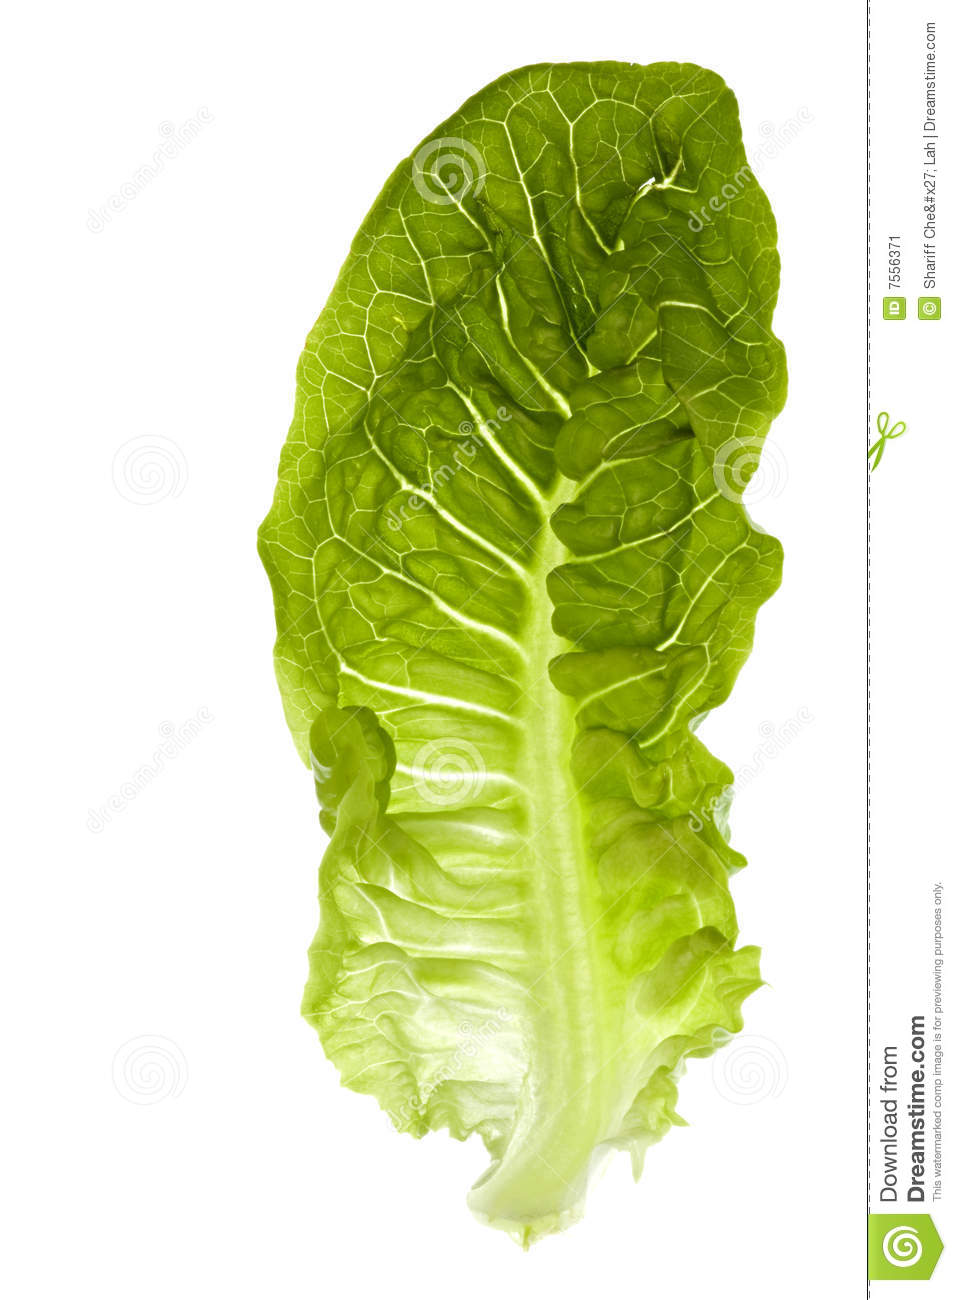 Romaine Lettuce Isolated Stock Image   Image  7556371